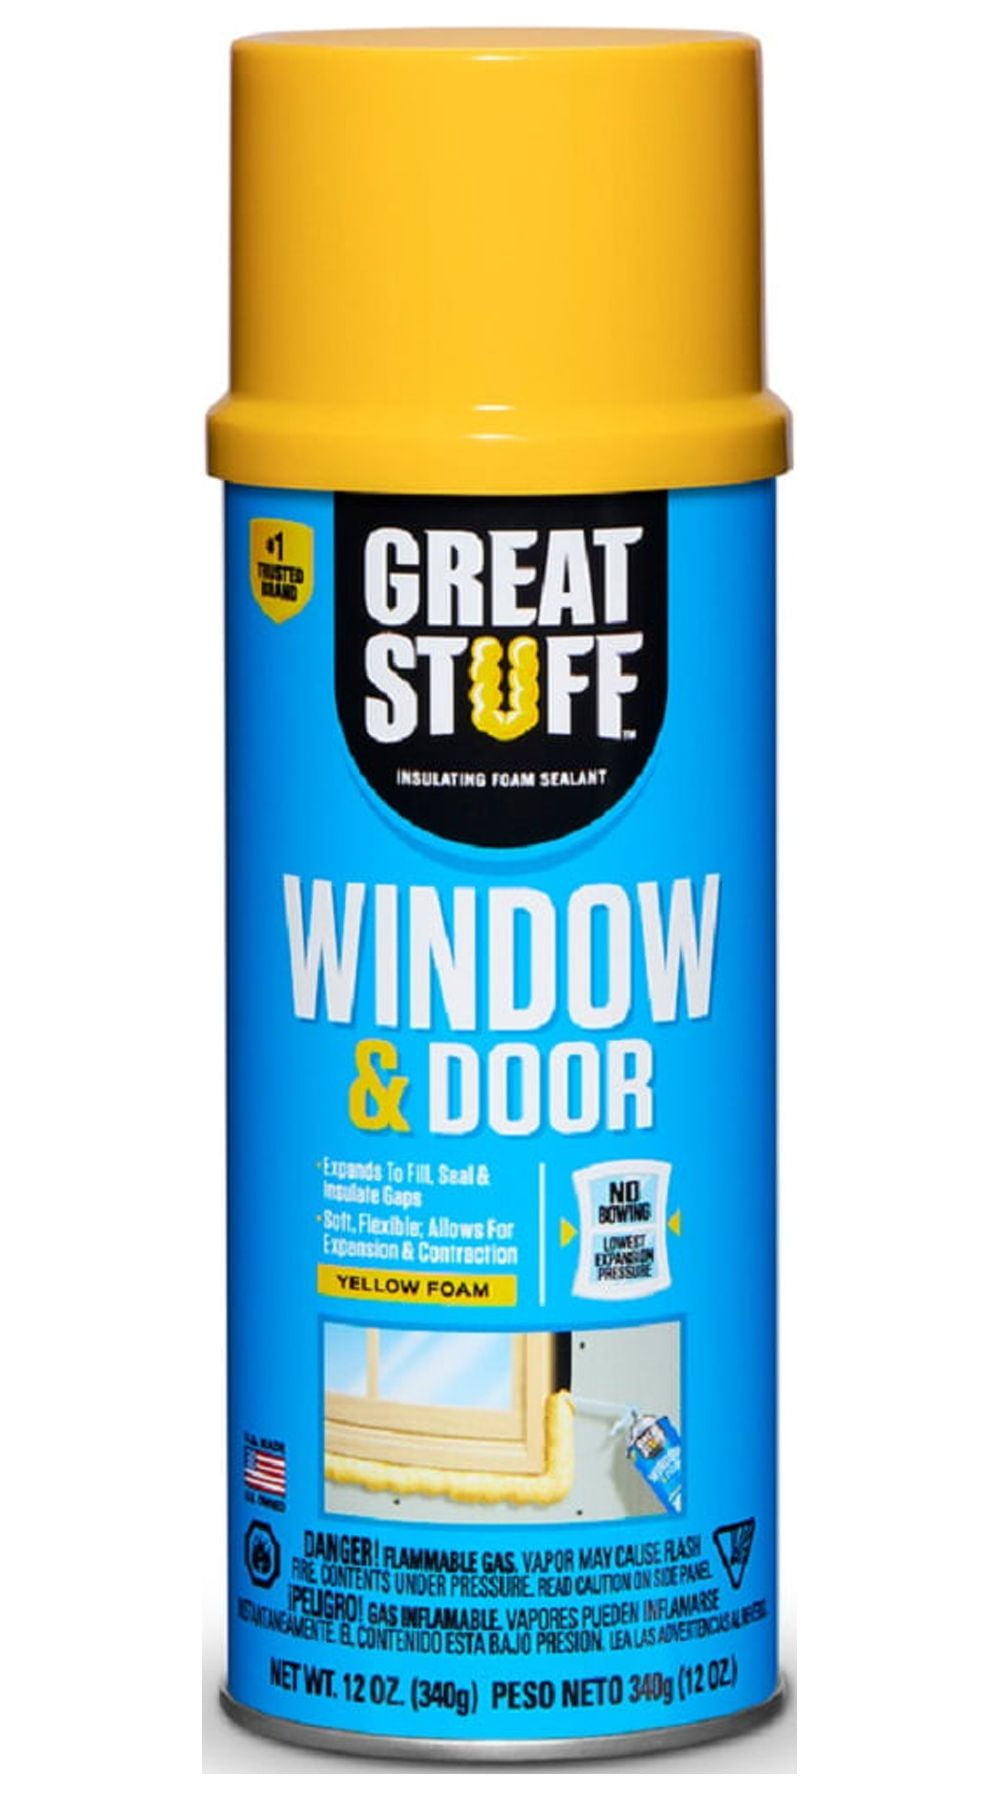 GREAT STUFF Window & Door Insulating Foam Sealant 12 oz 